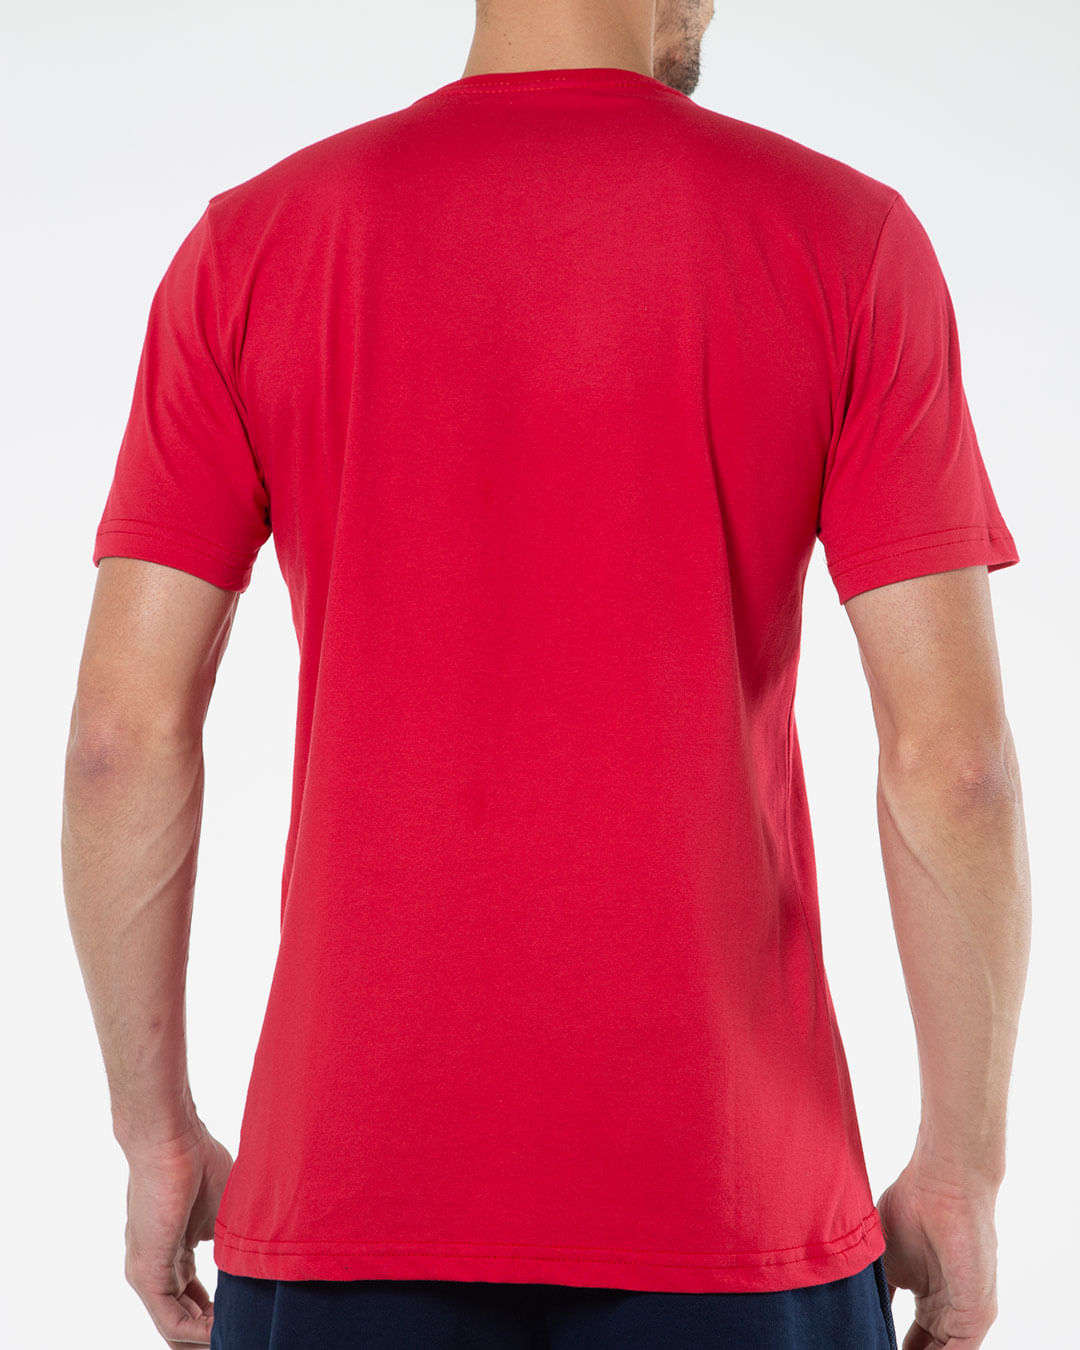 Camiseta-Masculina-Meia-Malha-Estampada-Vermelha